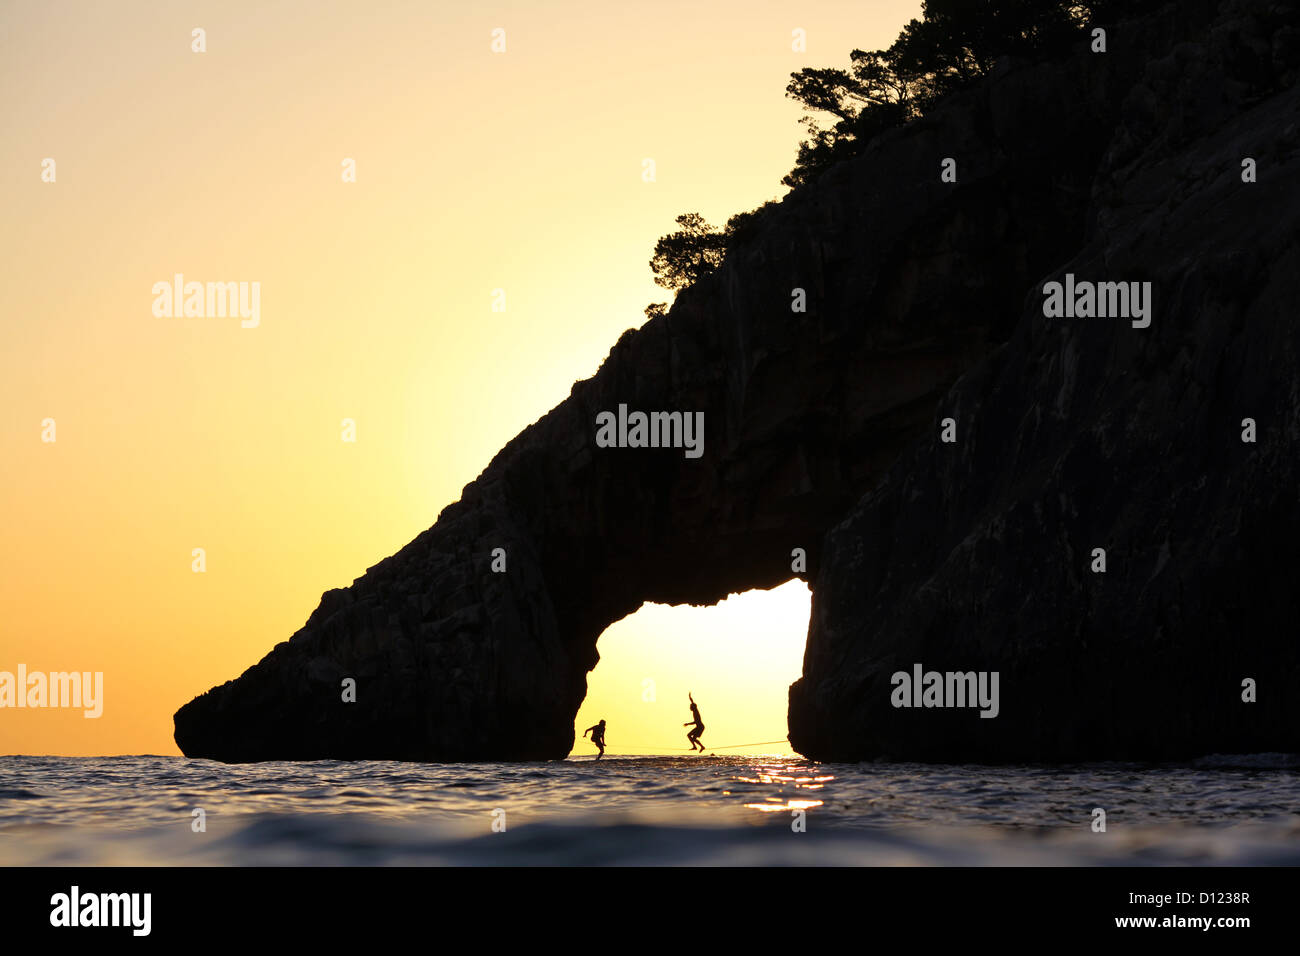 Zwei Slackliner zu Fuß auf einer Slackline in einer offenen Höhle am Wasser in Cala Goloritze, Sardinien, Italien, bei Sonnenuntergang. Stockfoto